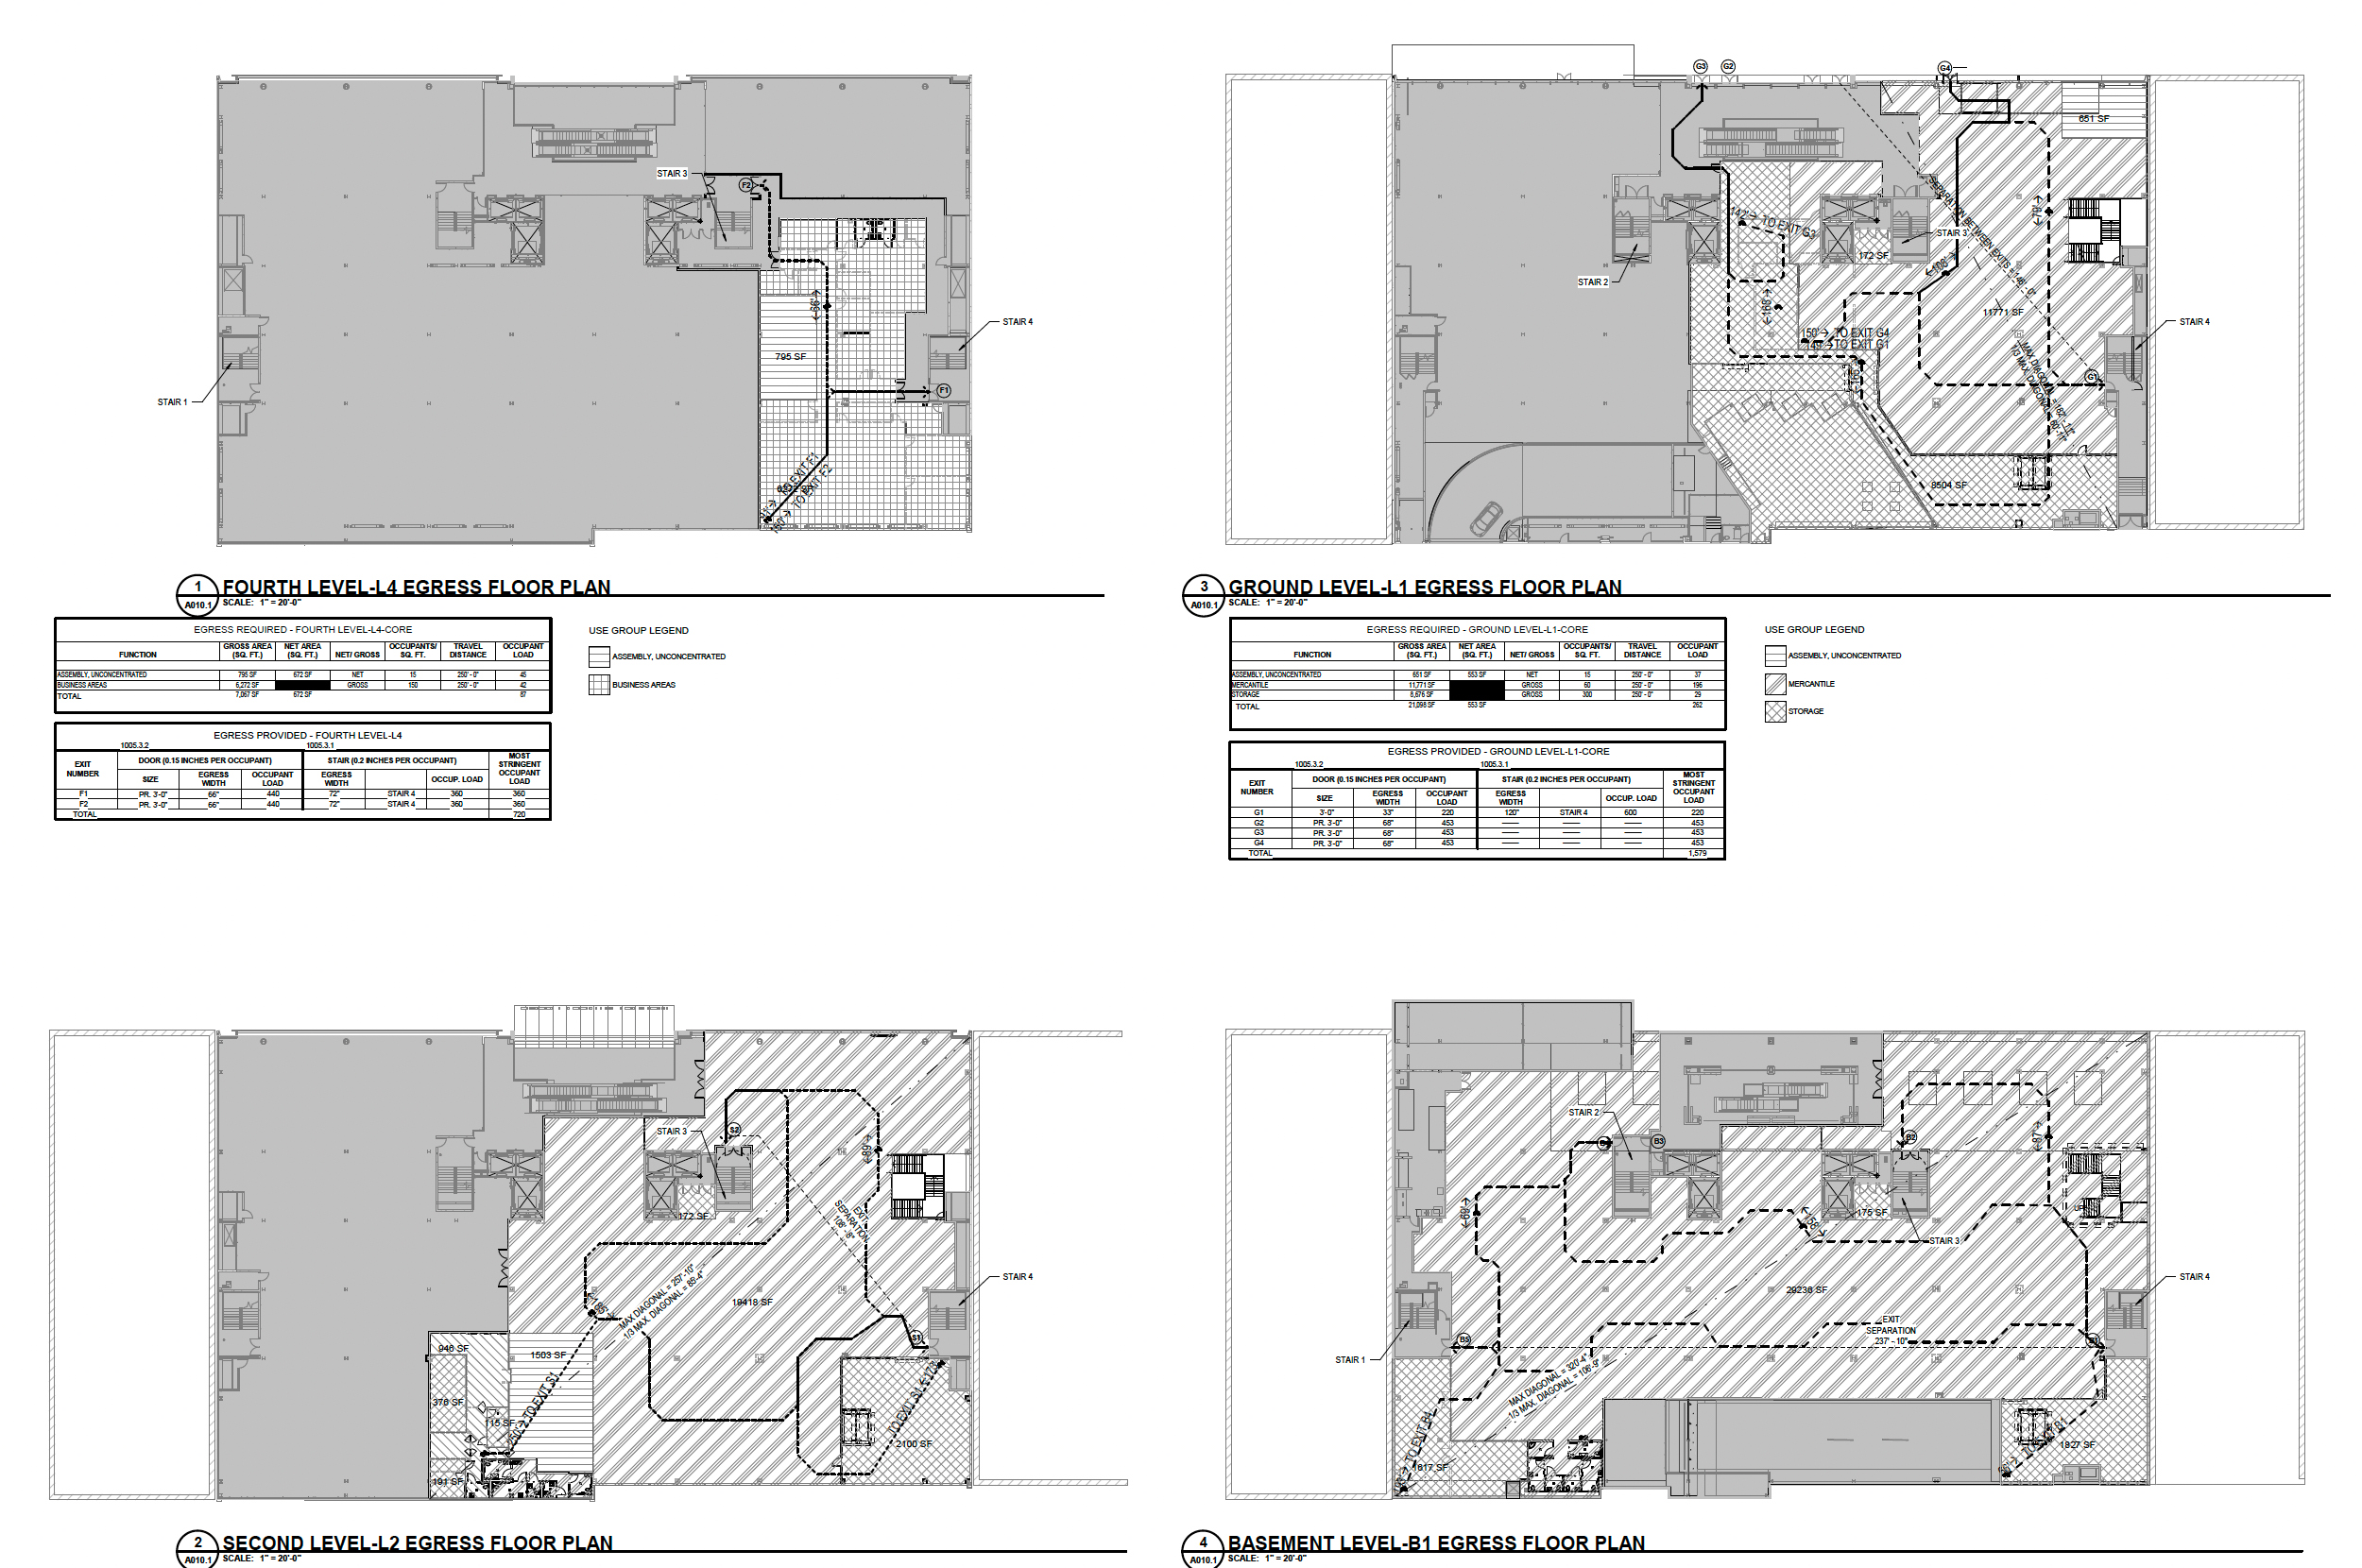 945 Market Street floor plans, image by GreenbergFarrow